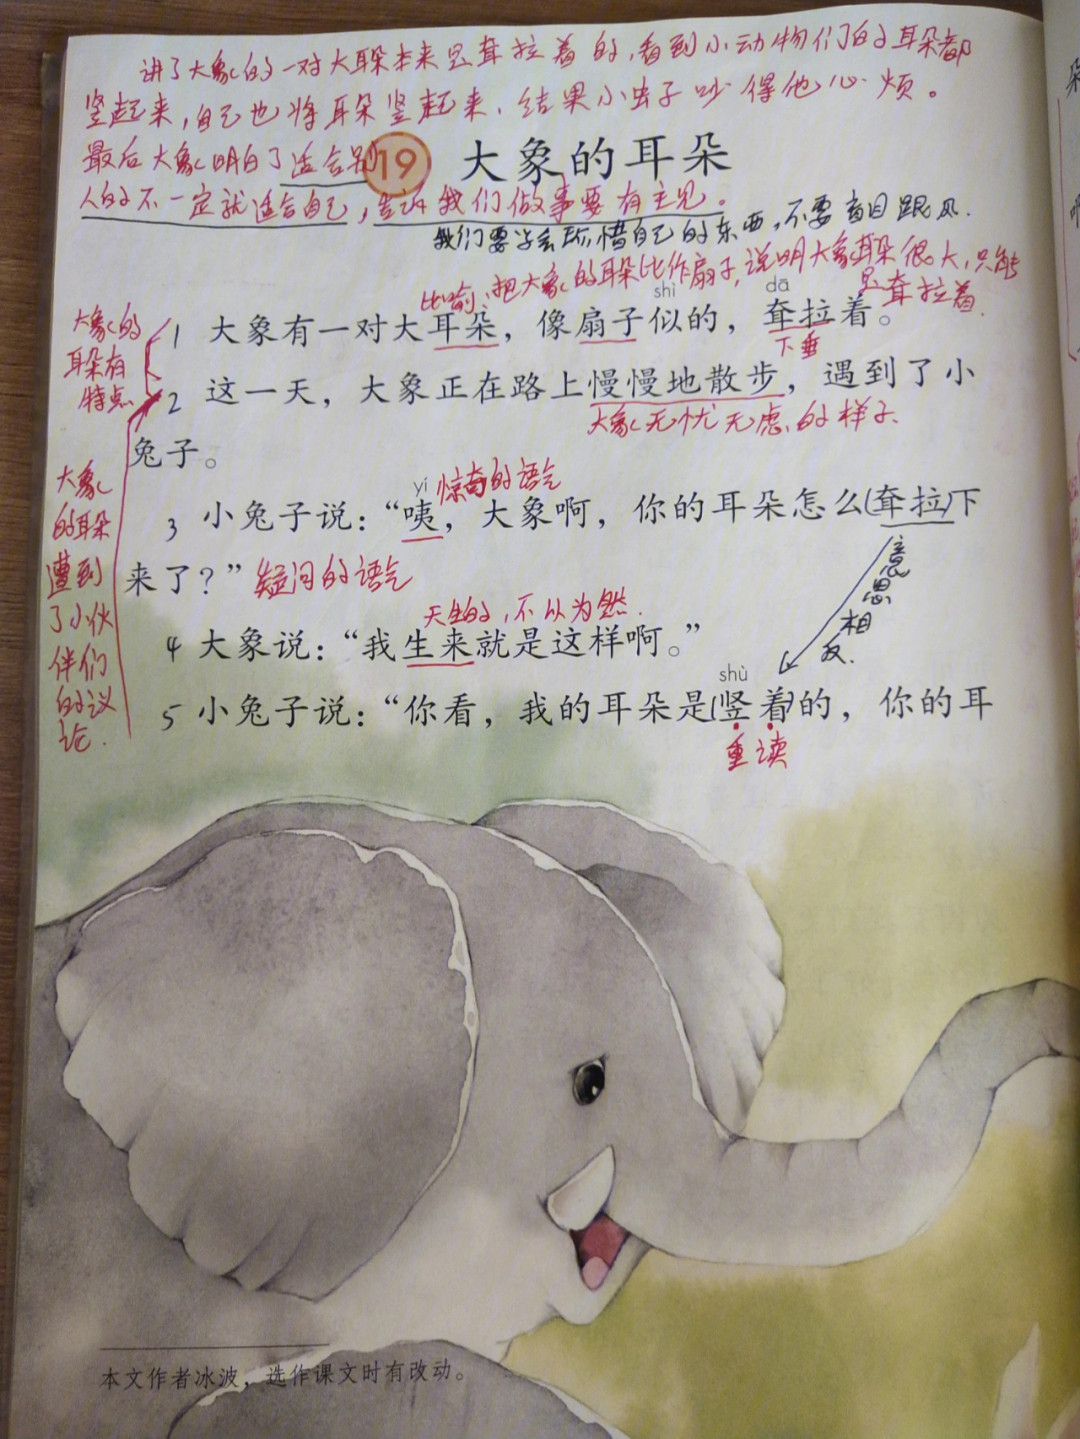 大象的耳朵笔记课文图片